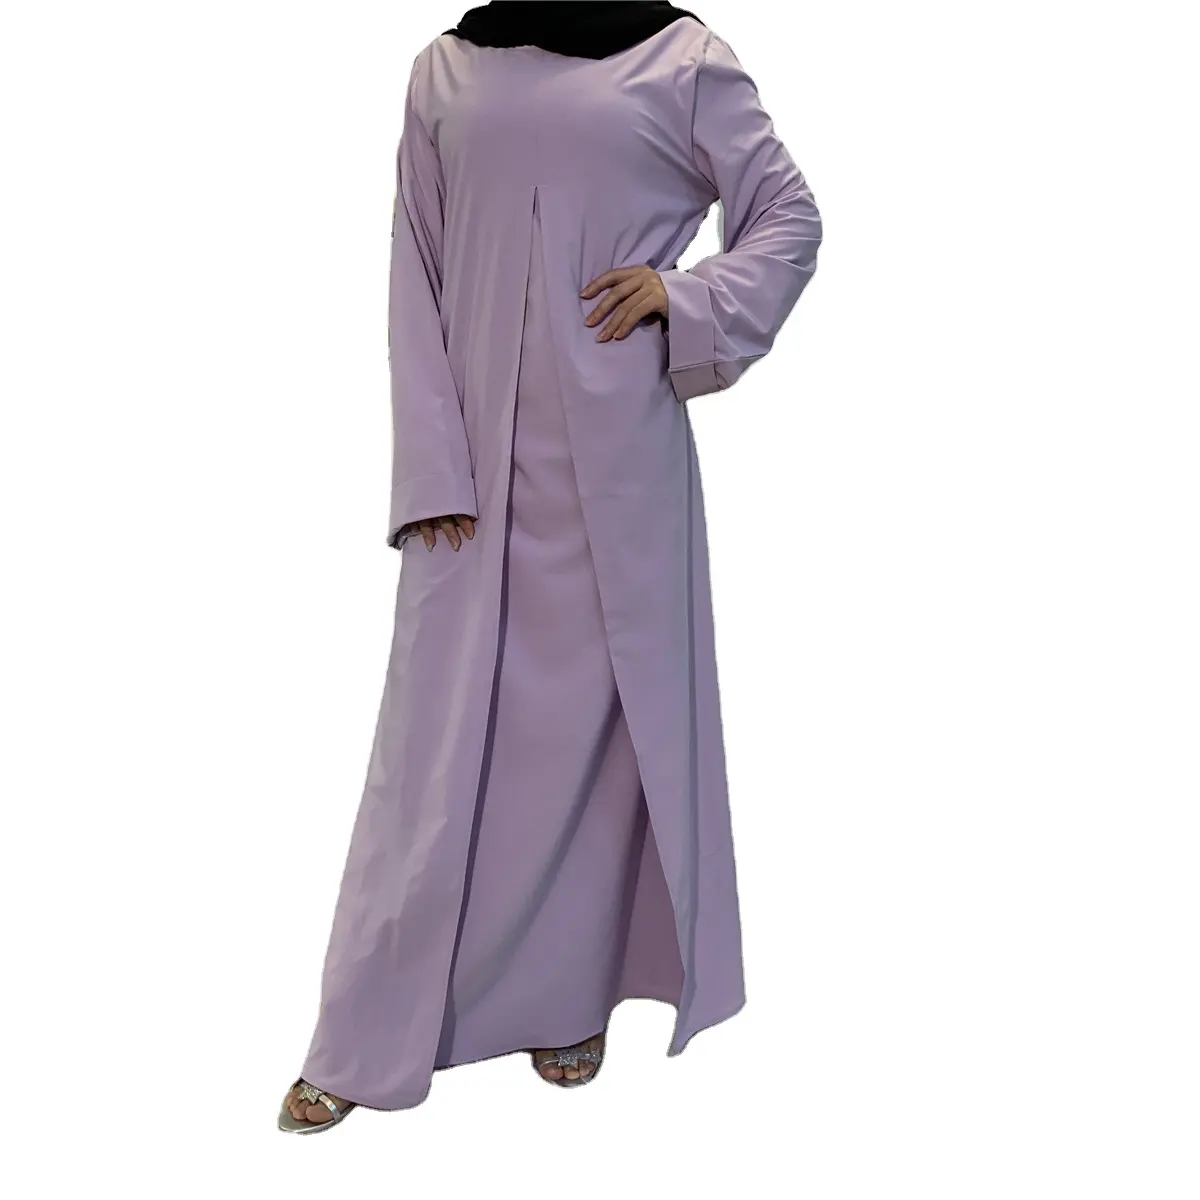 Wanita Muslim Timur Tengah Dubai pakaian Islami gaun Kaftan Abaya tali terikat, gaun maxi jubah Dubai Timur Tengah